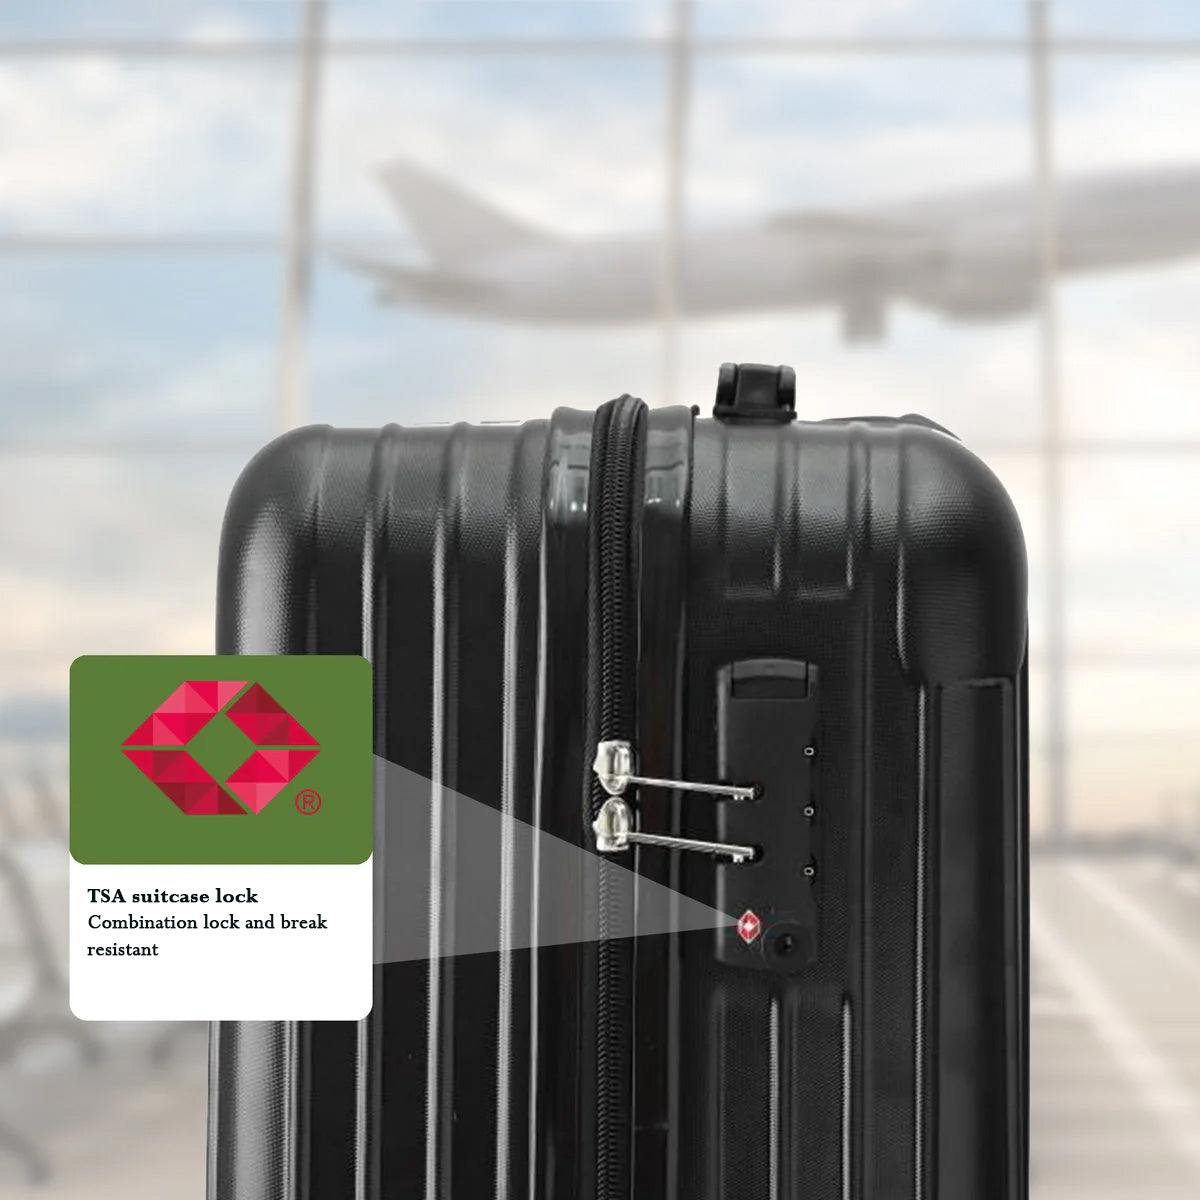 Travelhawk - Hand Luggage Suitcase